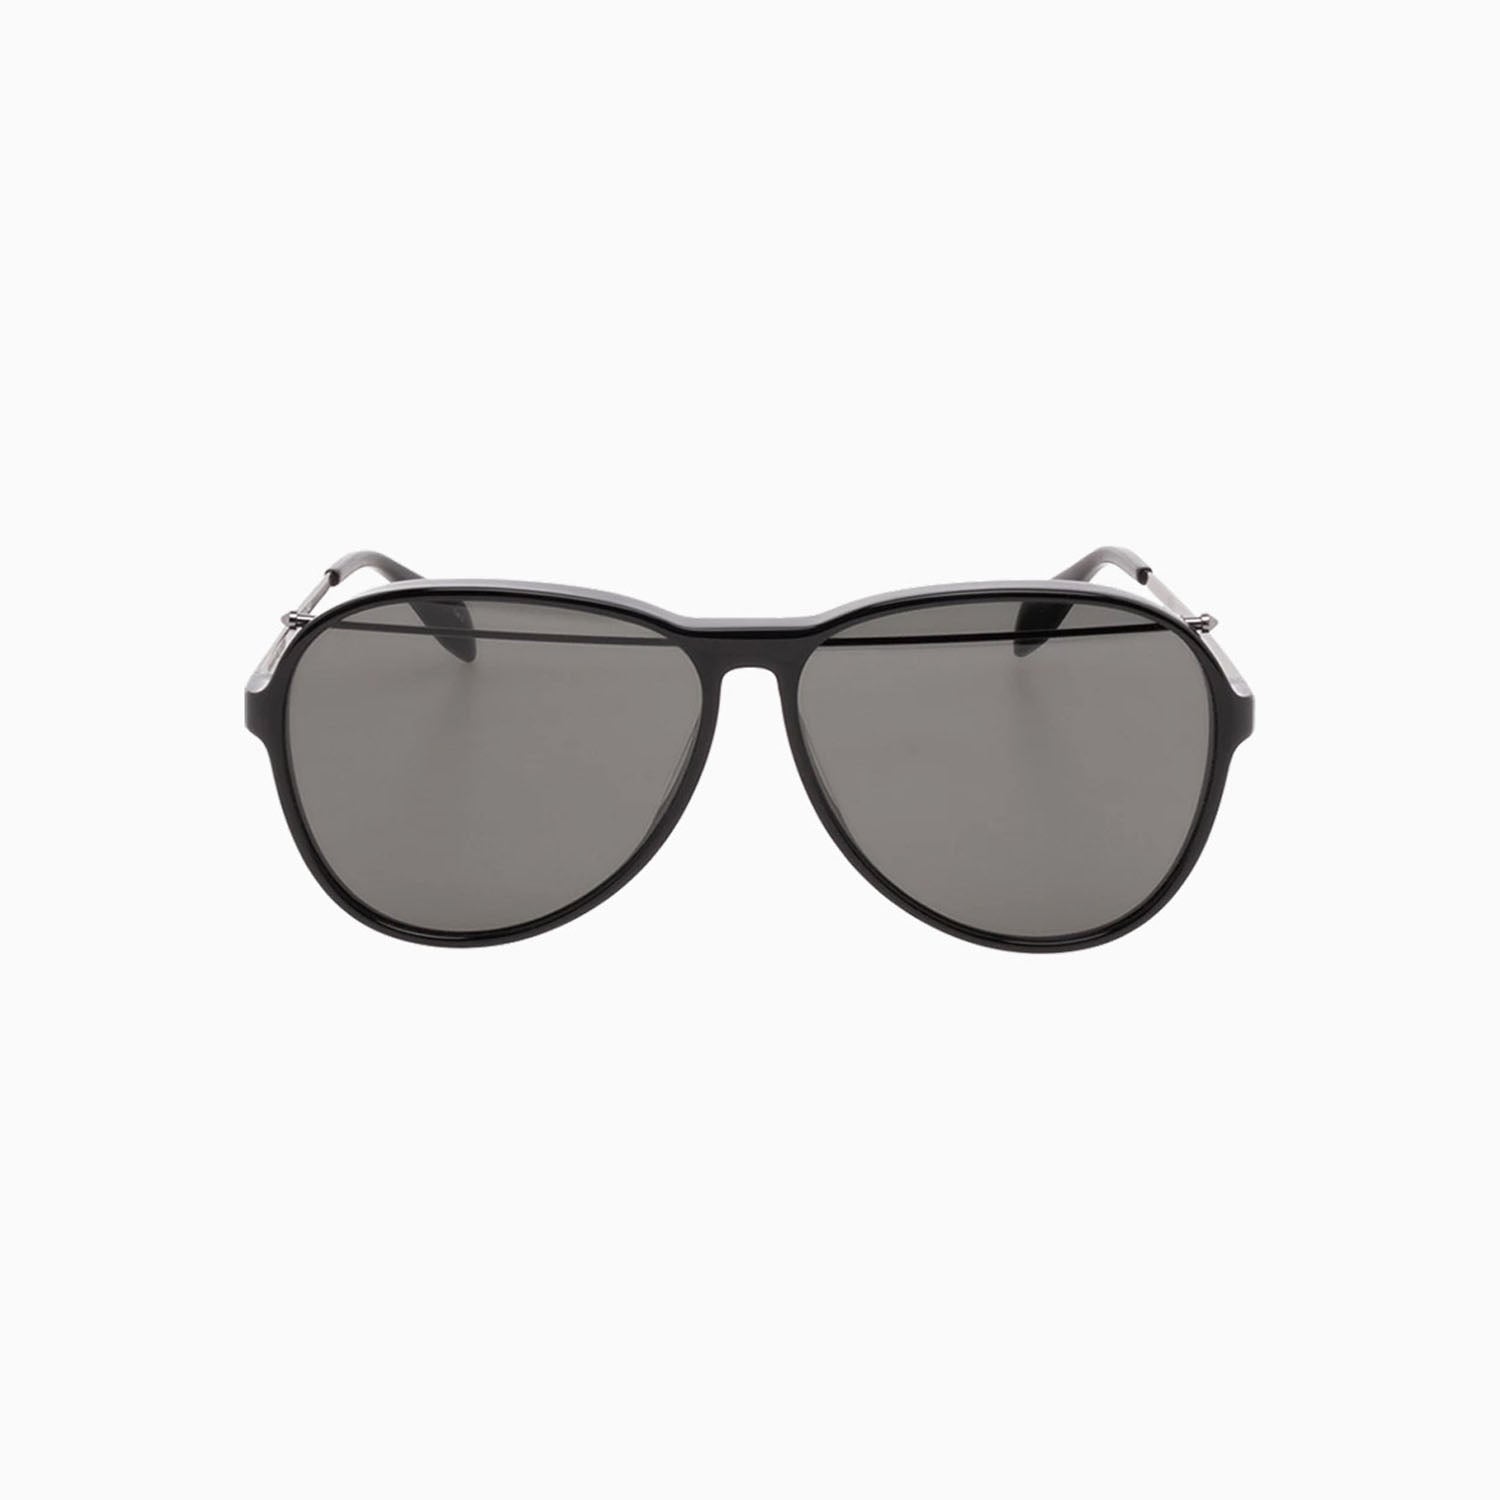 alexander-mcqueen-black-acetate-sunglasses-am0193s-001